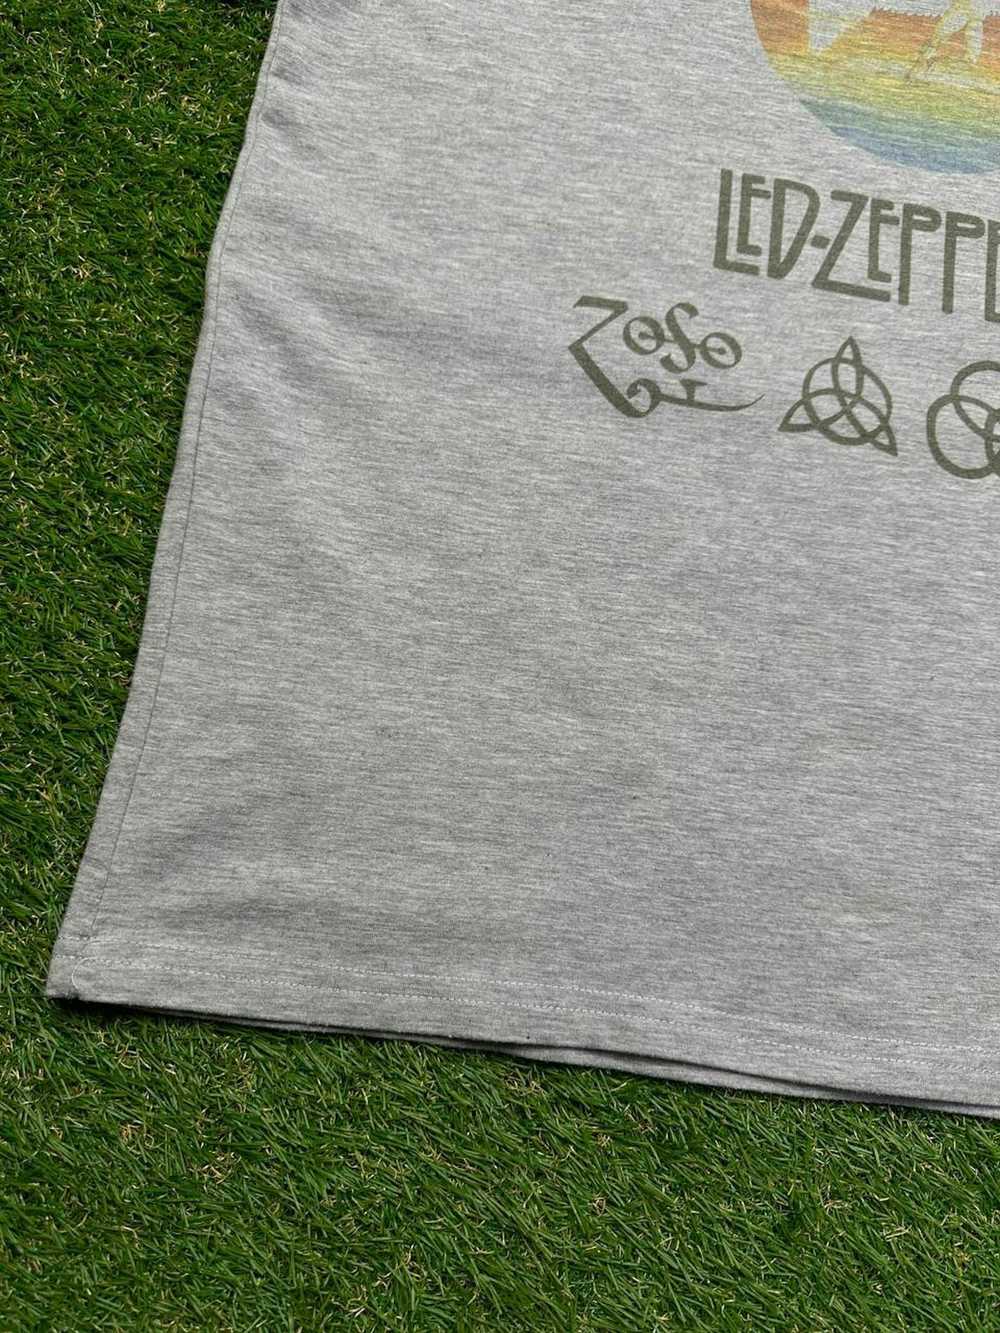 Band Tees × Led Zeppelin × Vintage VTG Led Zeppel… - image 5